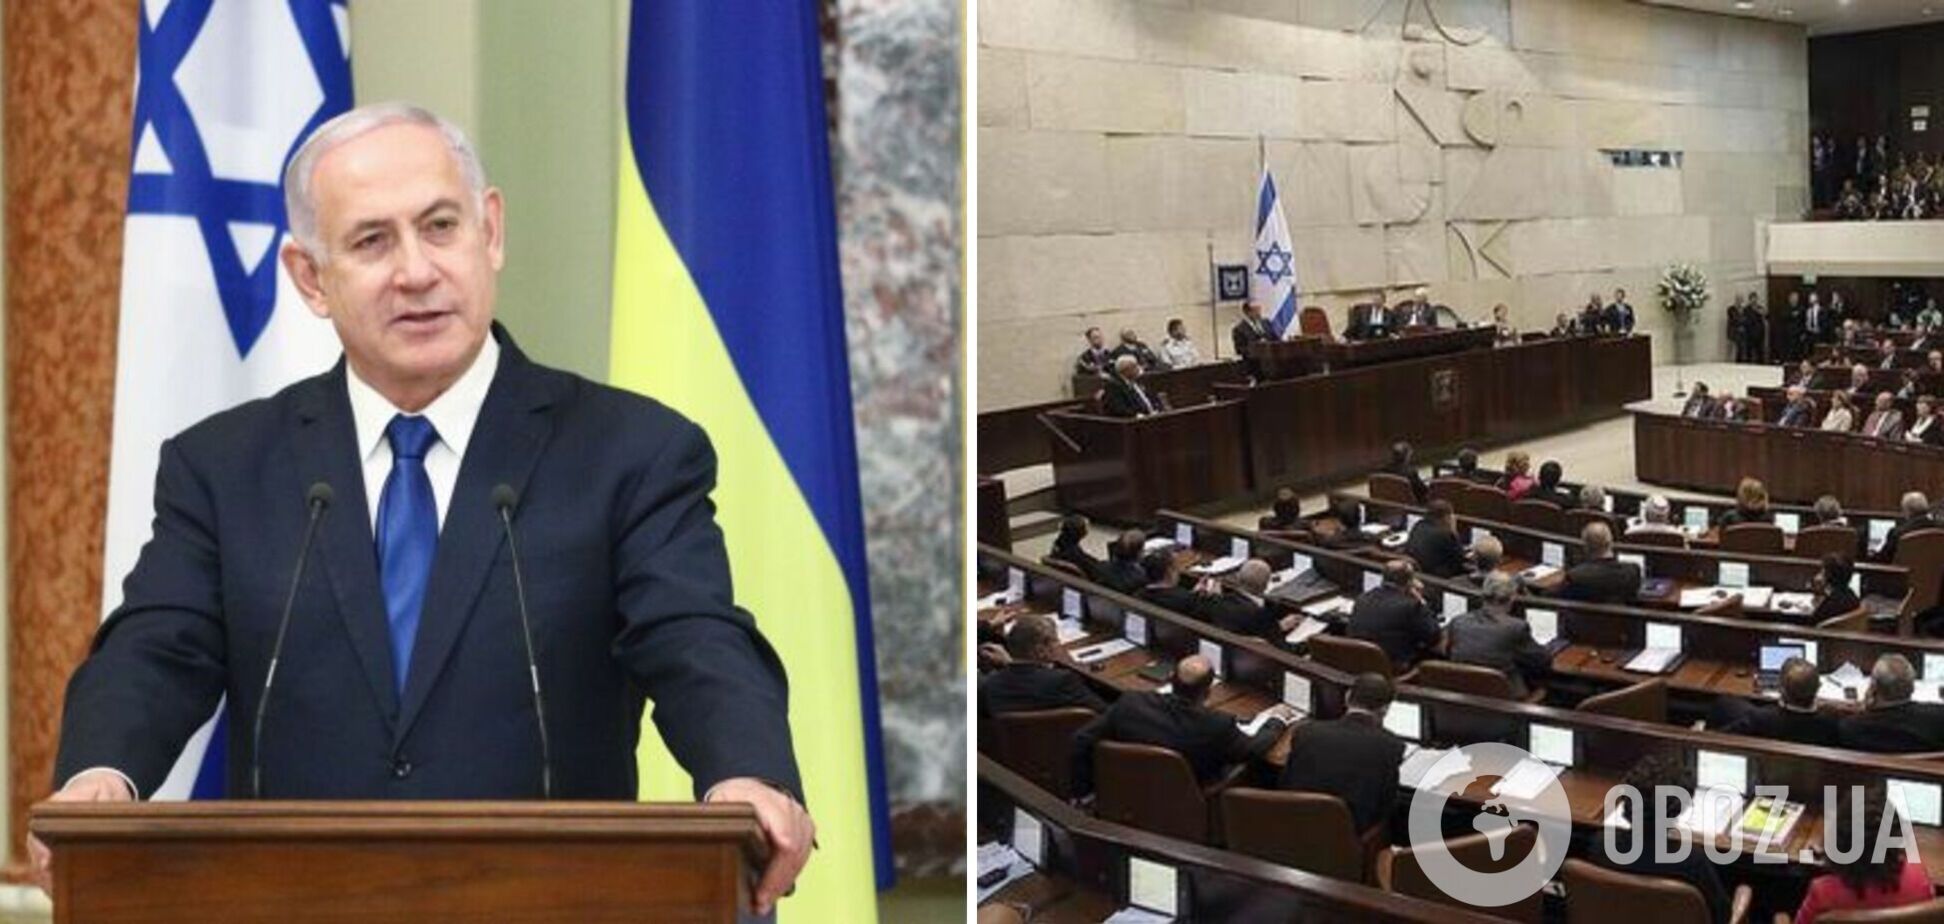 Ізраїльський Кнесет затвердив новий уряд: прем’єром став Нетаньягу